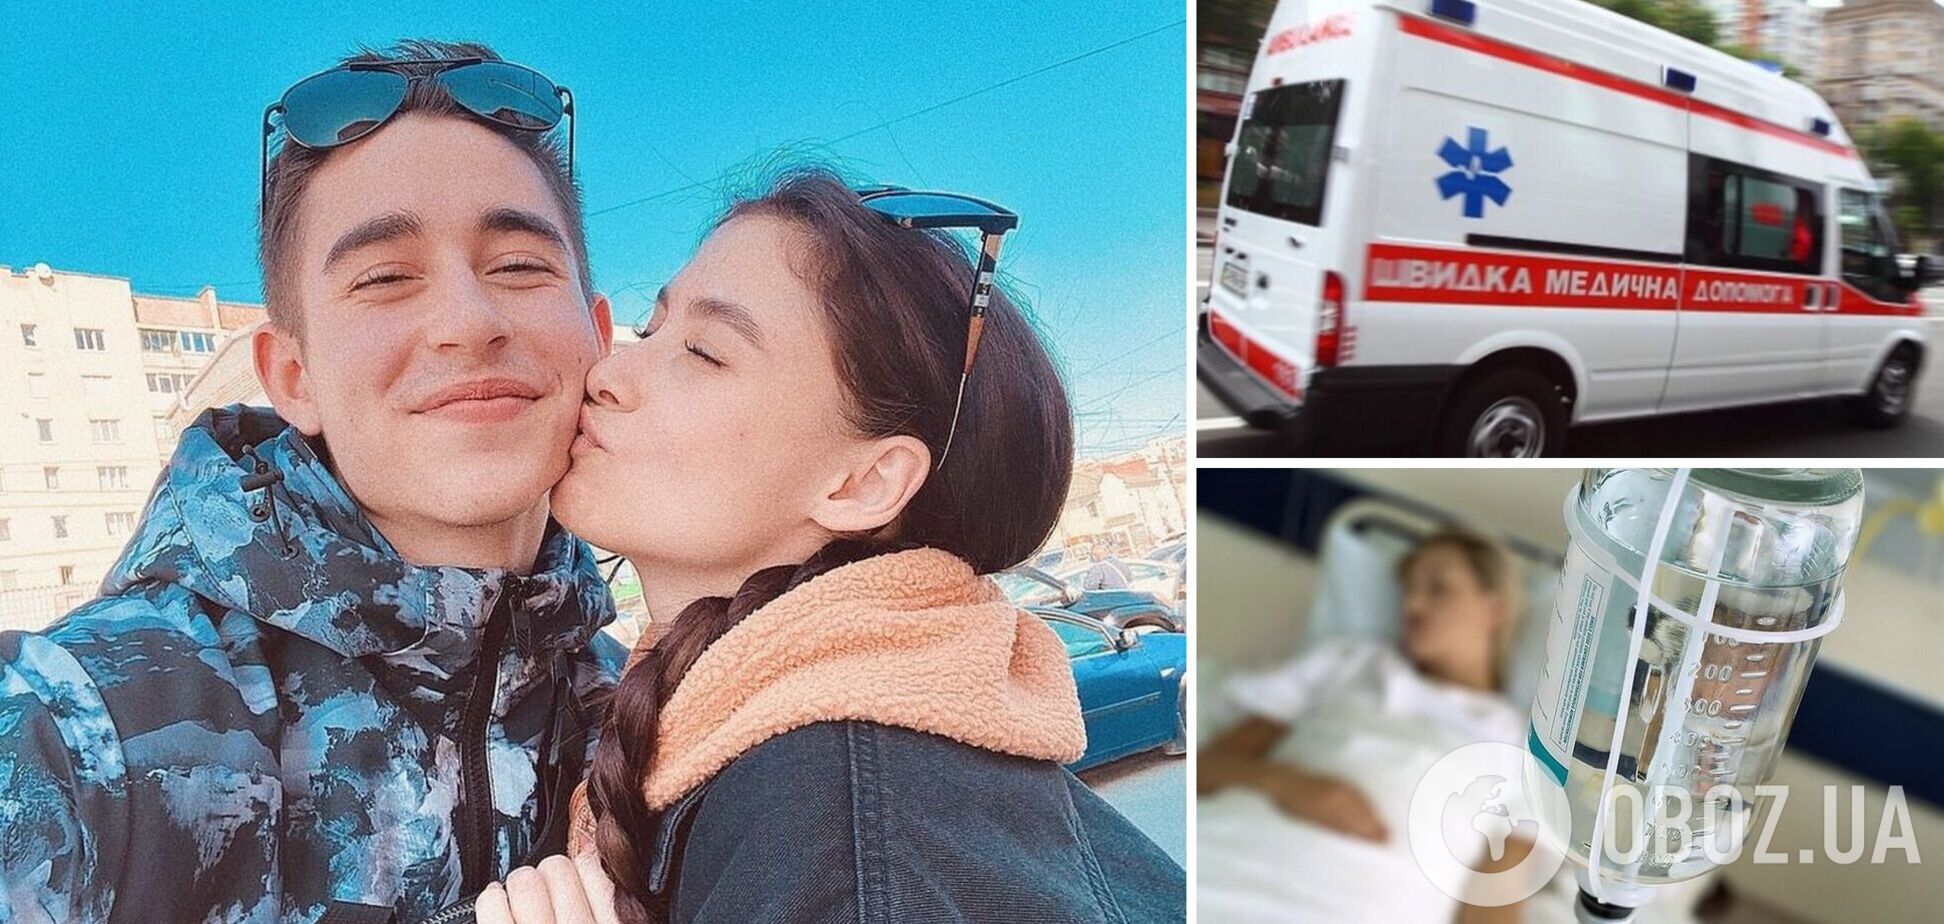 'Ей сейчас очень тяжело': Сасанчин откровенно признался, почему его жена попала в больницу